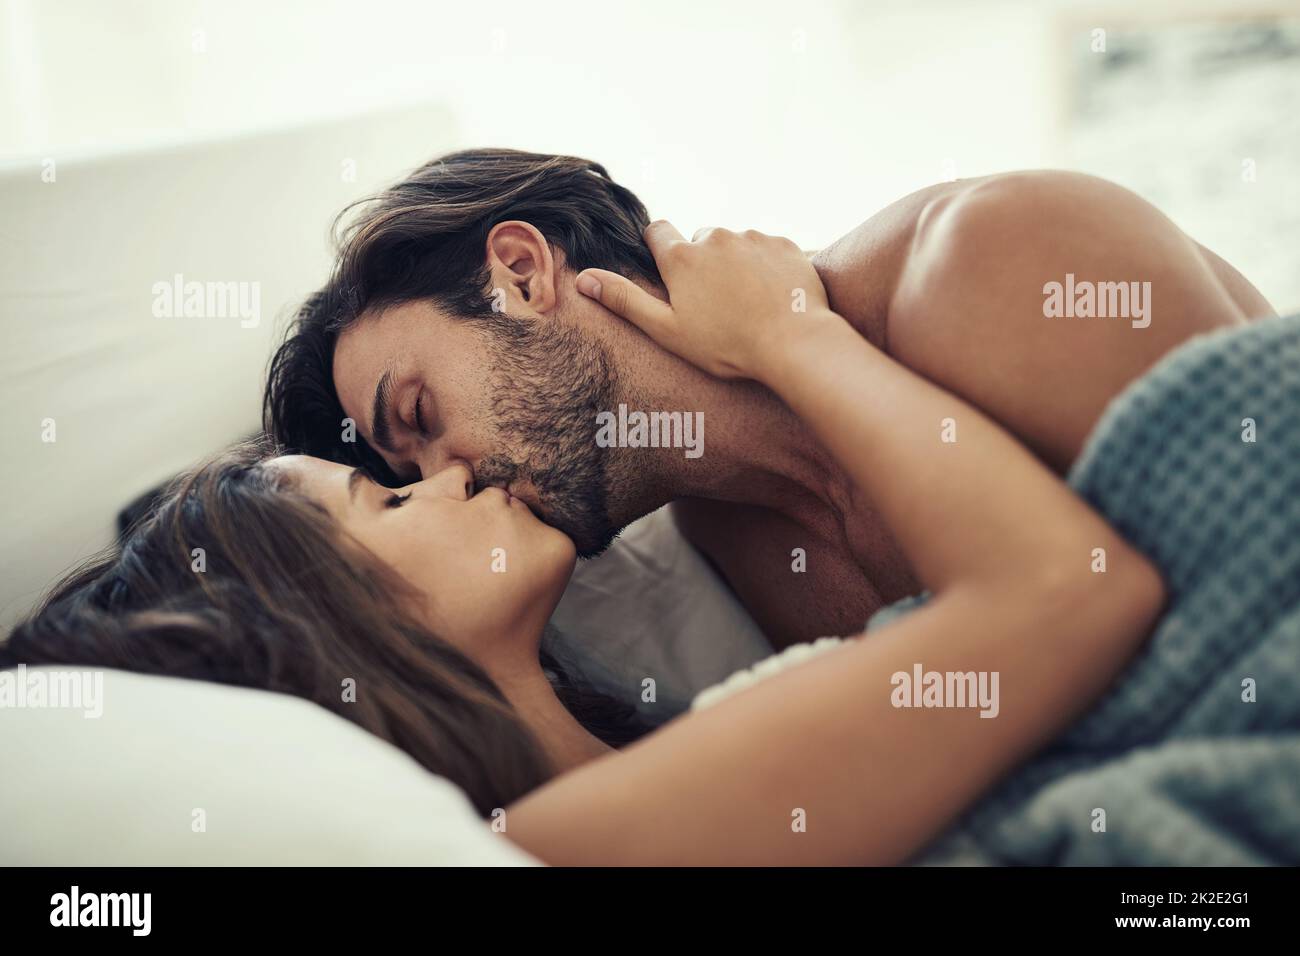 Ser íntimo. Foto recortada de una pareja joven cariñosa siendo íntima en la cama. Foto de stock